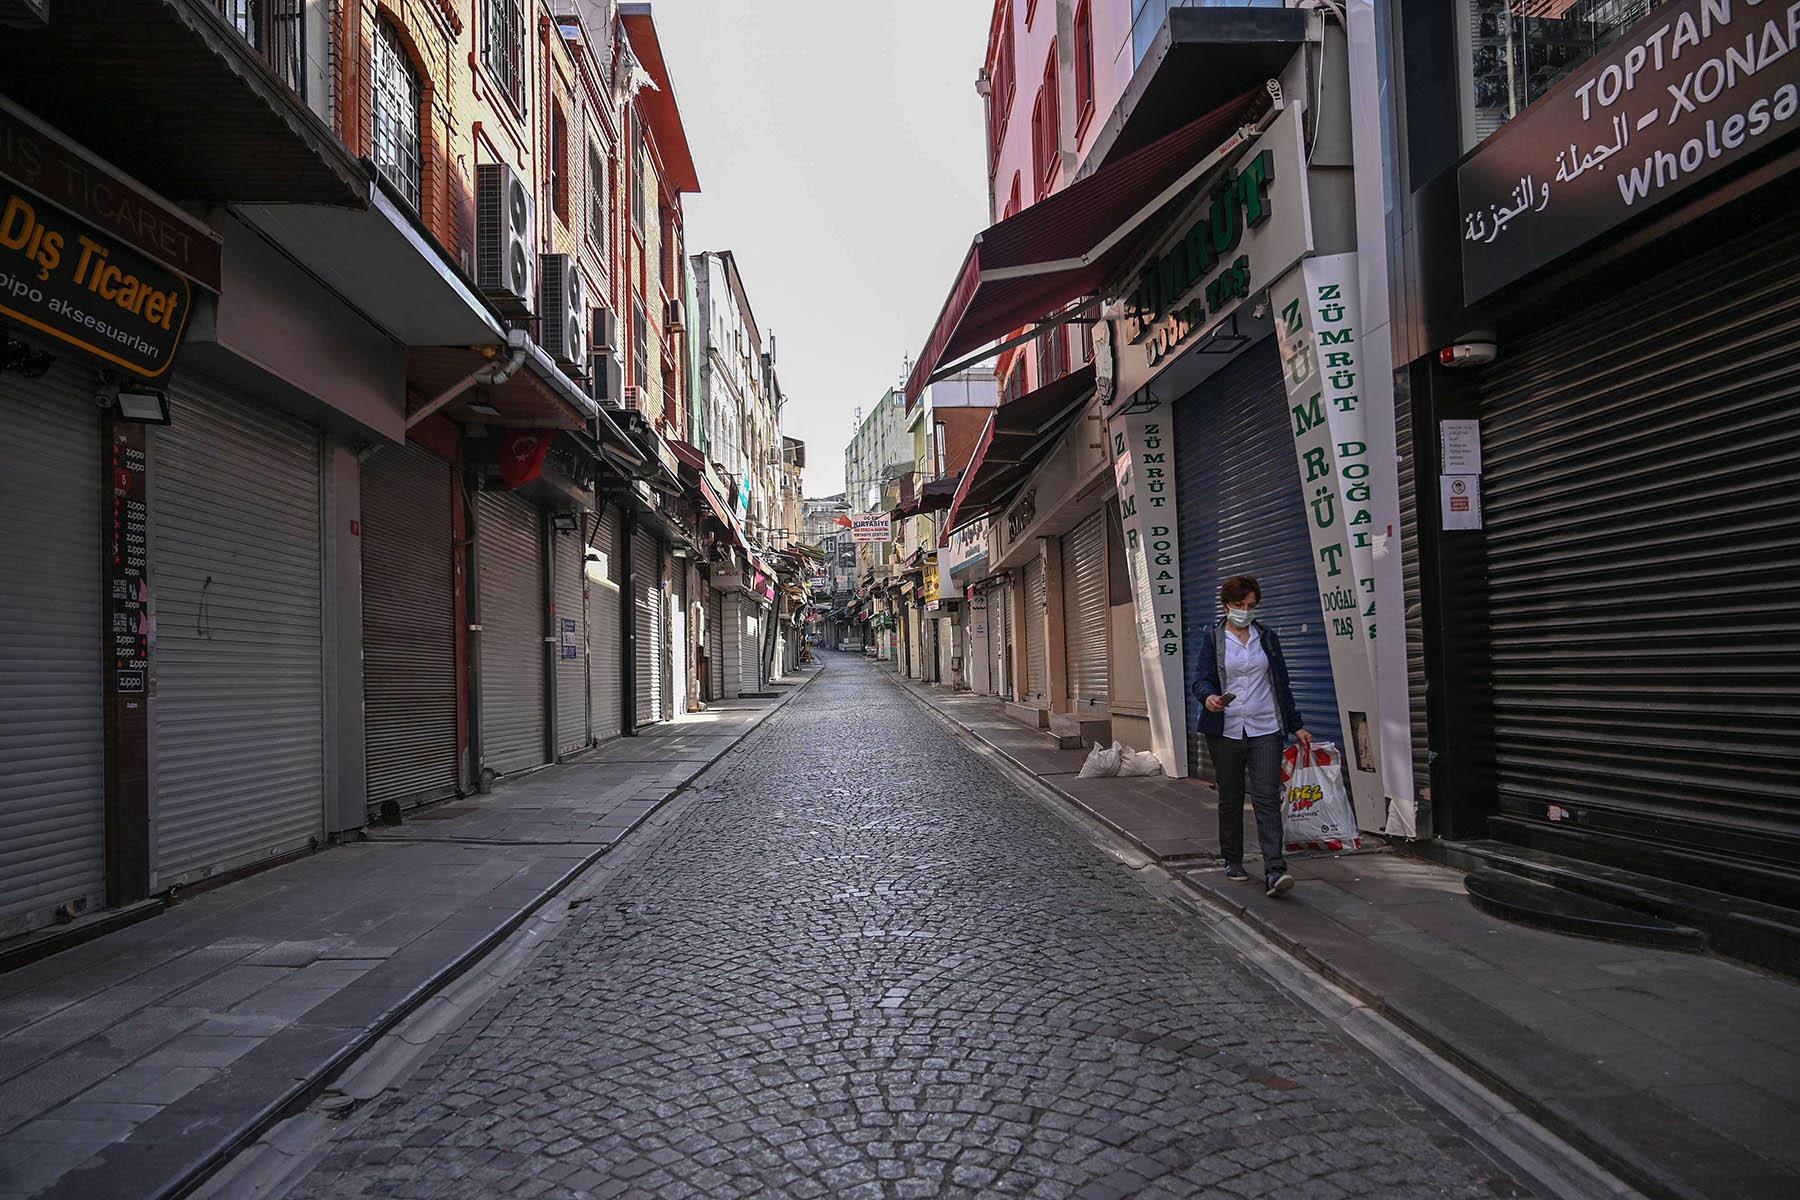 Turkey hopes lockdown rescues tourism season